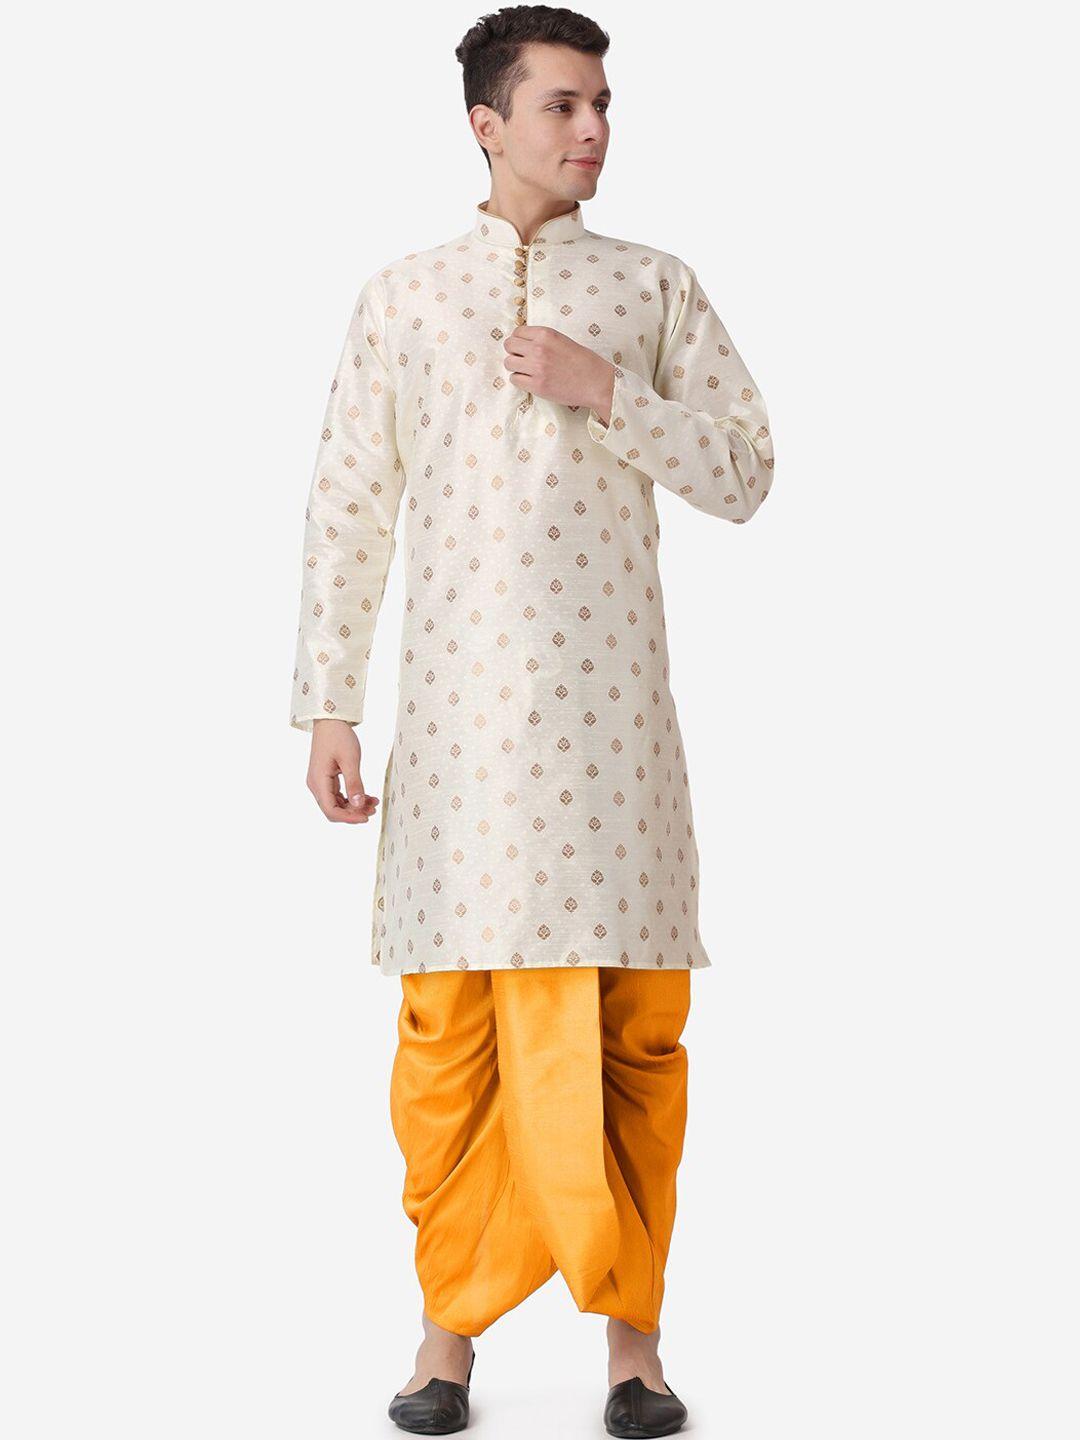 royal kurta men ethnic motifs printed kurta with dhoti pants